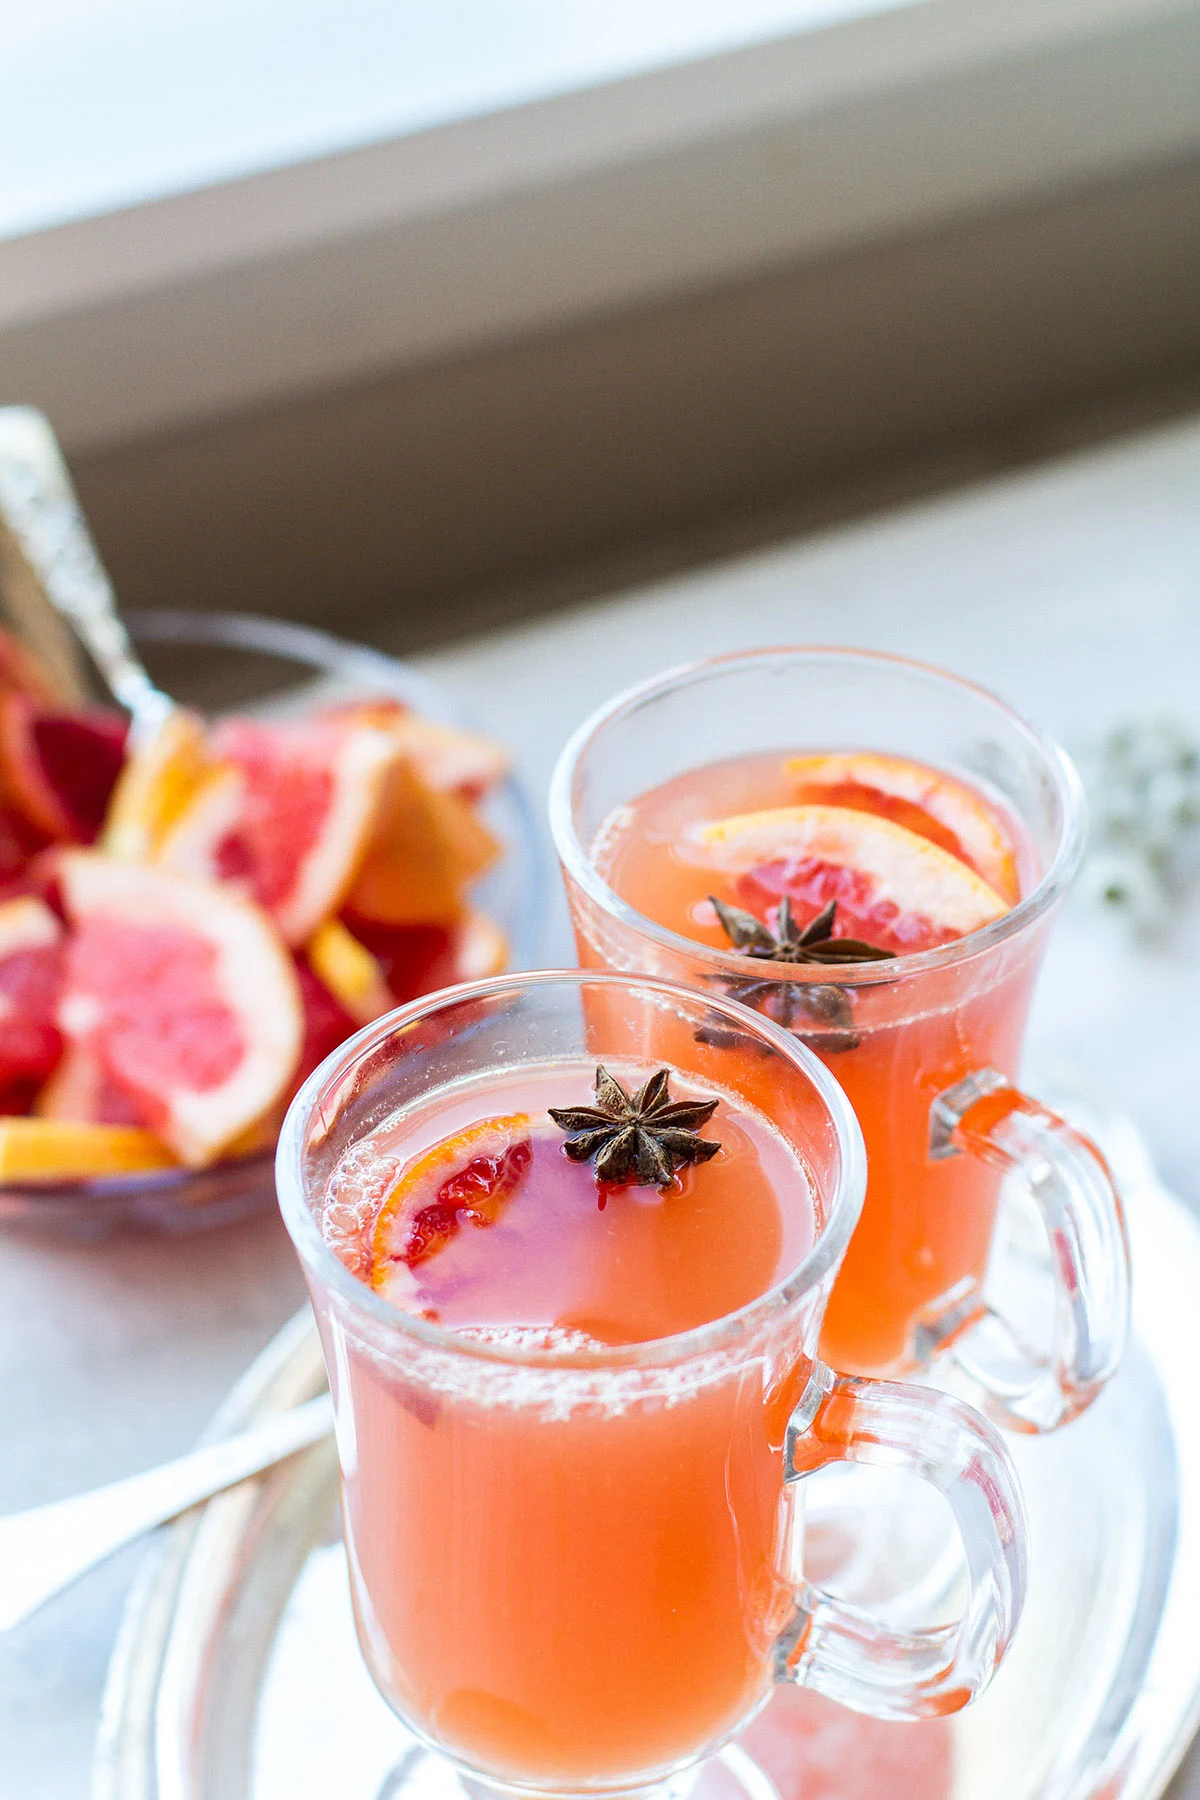 Two glass mugs with calendula tea and grapefruit cider.